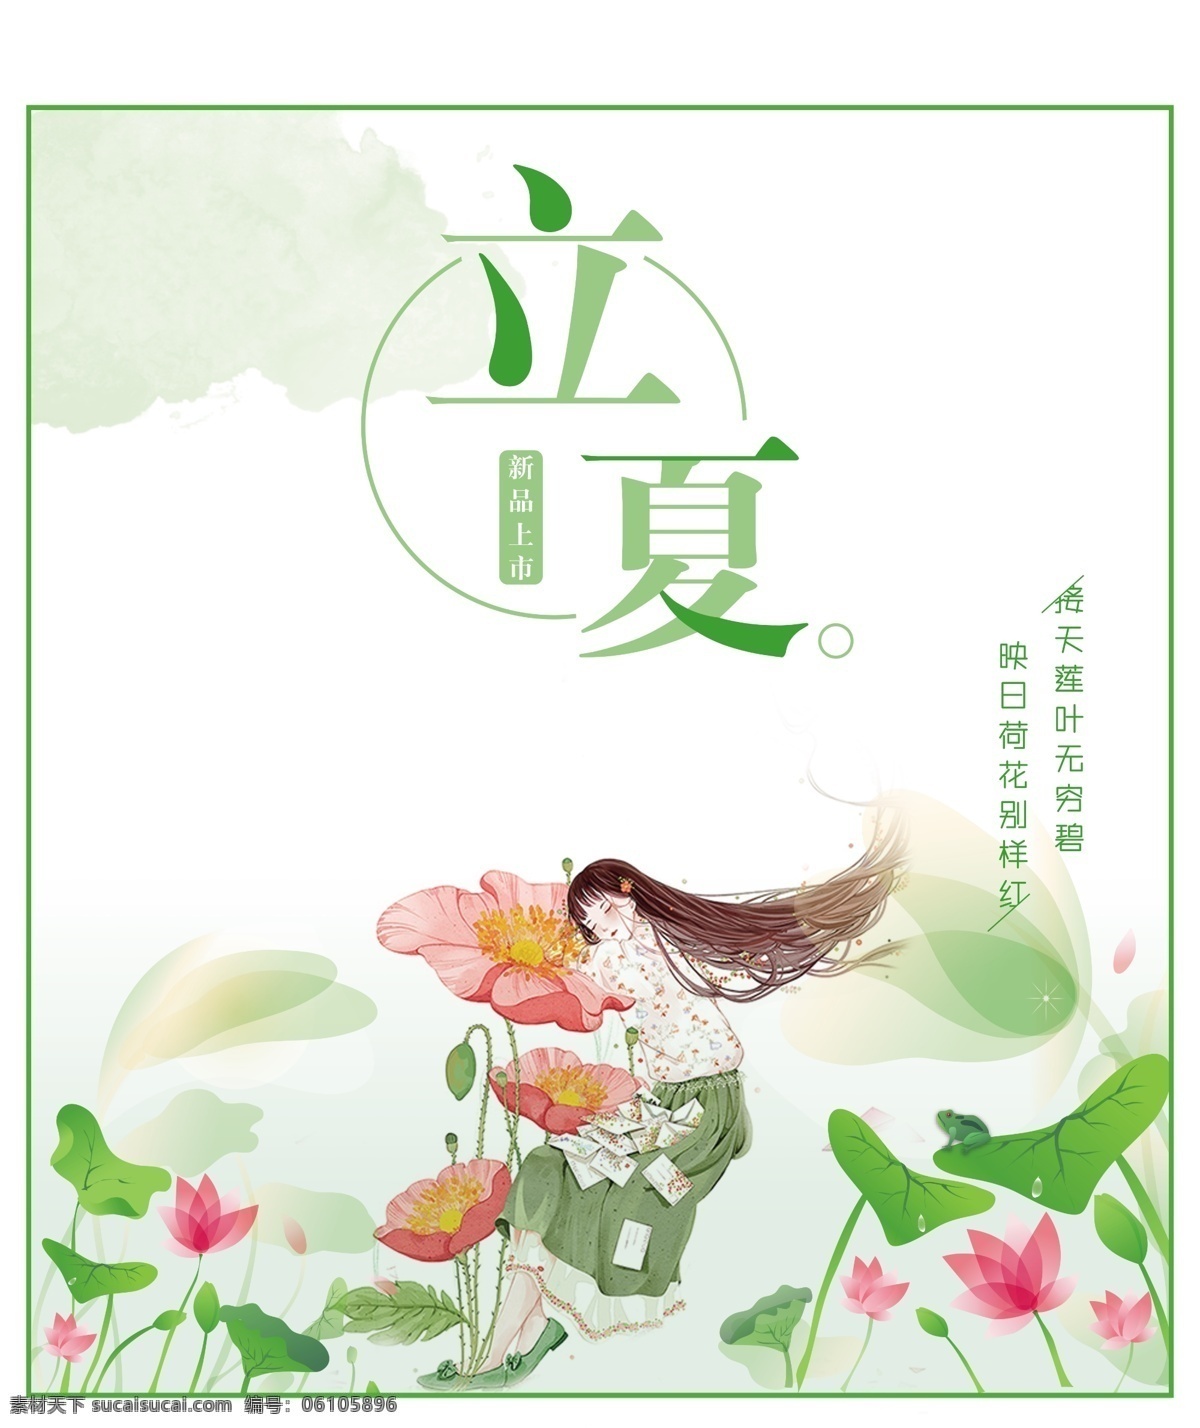 立夏 清新 绿色 节日 宣传海报 展板 荷花 少女 手绘 荷叶 荷花塘 绿云雾